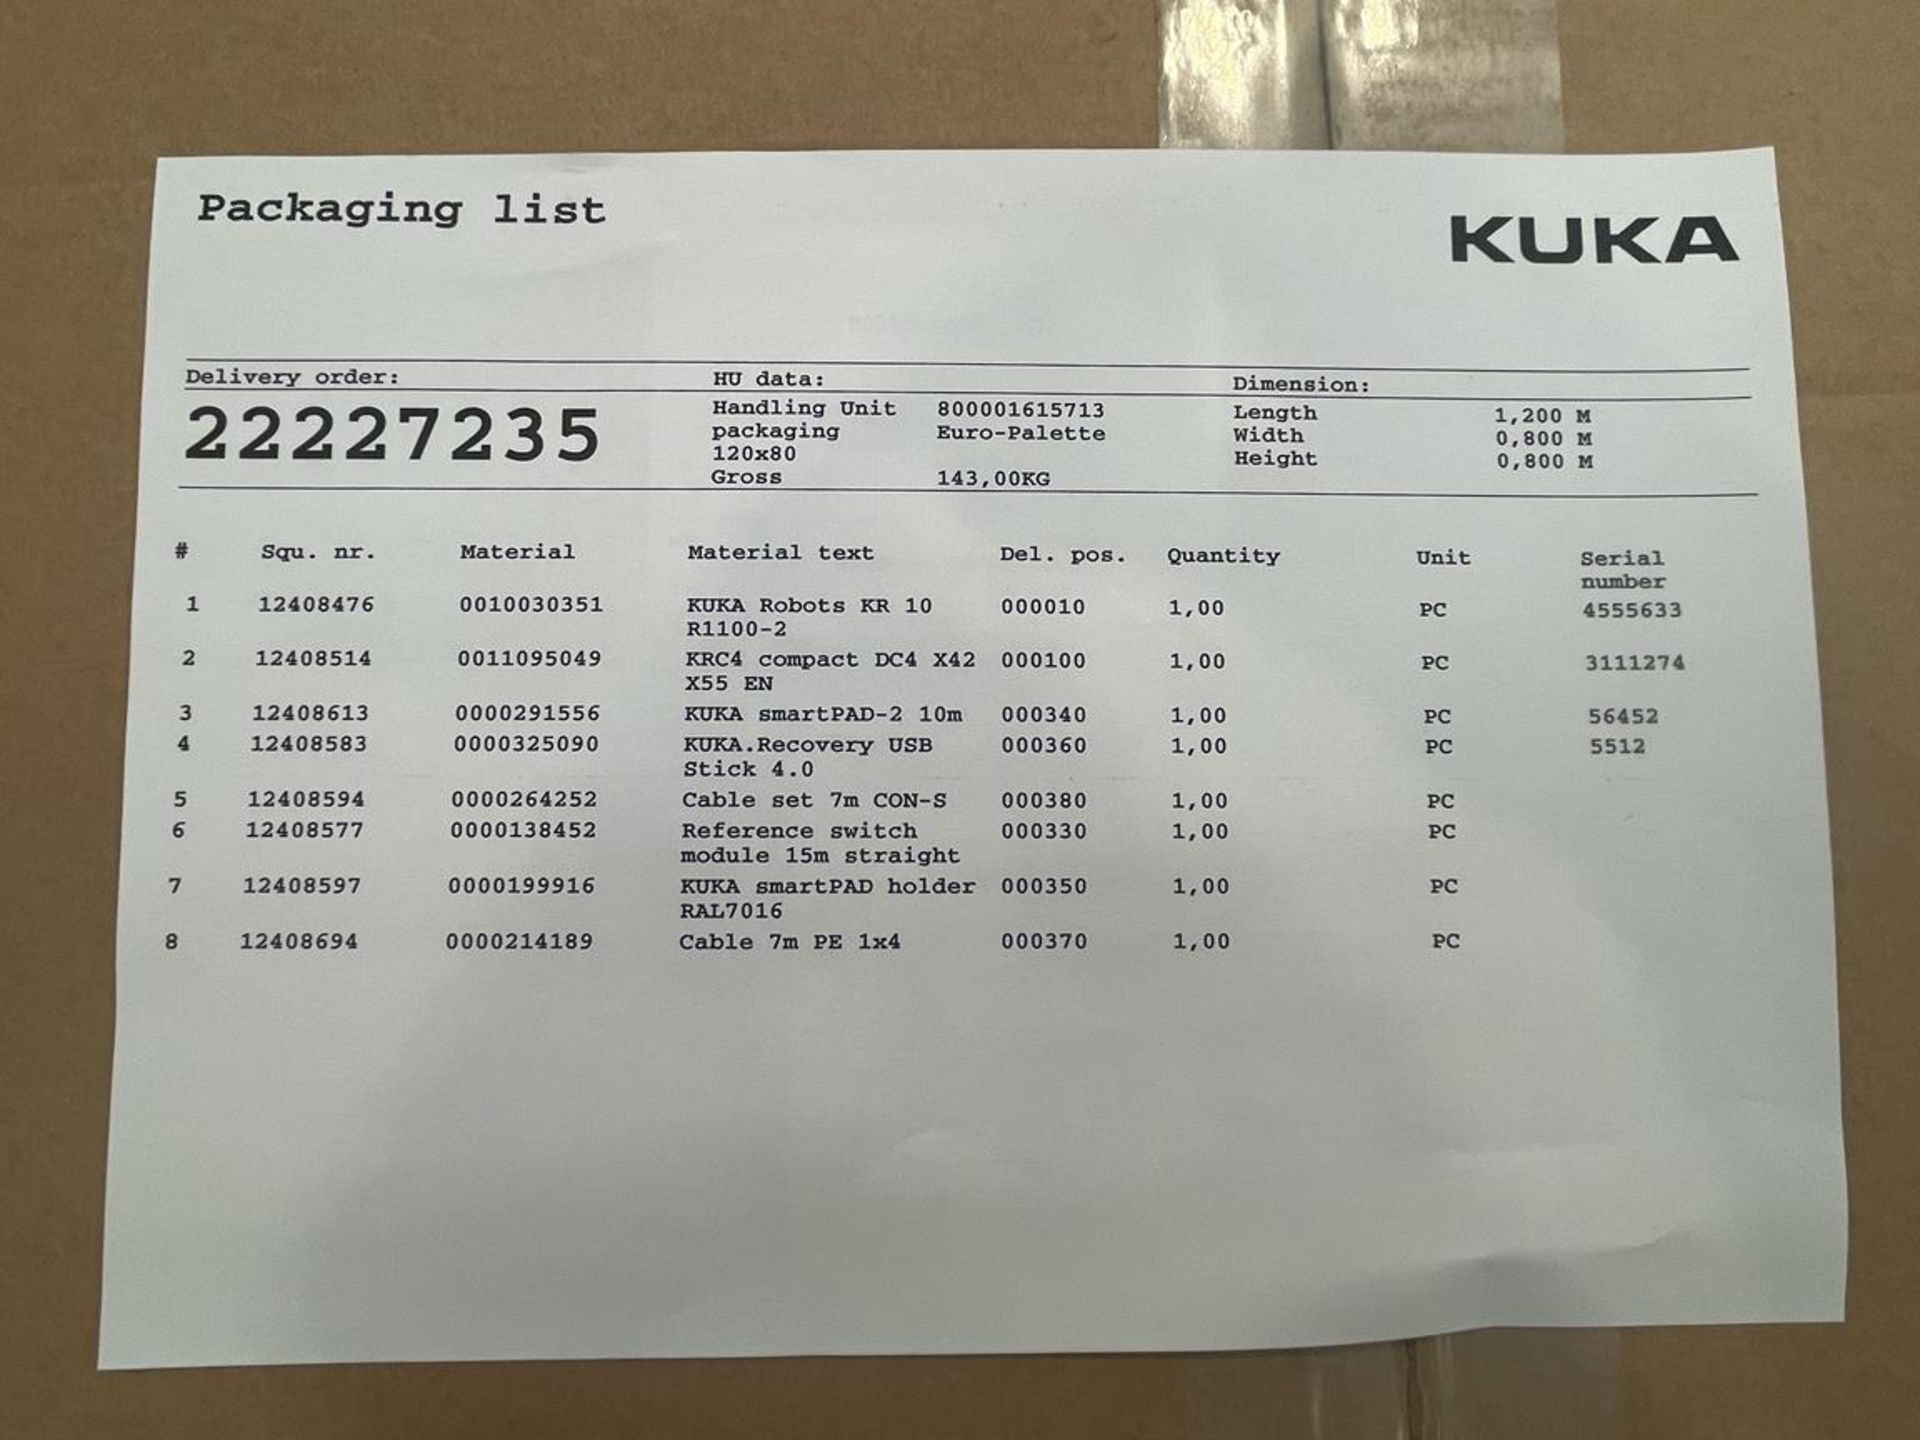 Kuka, KR10-R1100-2 six axis robot set comprising Kuka robot, KRC4 compact controller, Smart pad, cab - Image 4 of 4